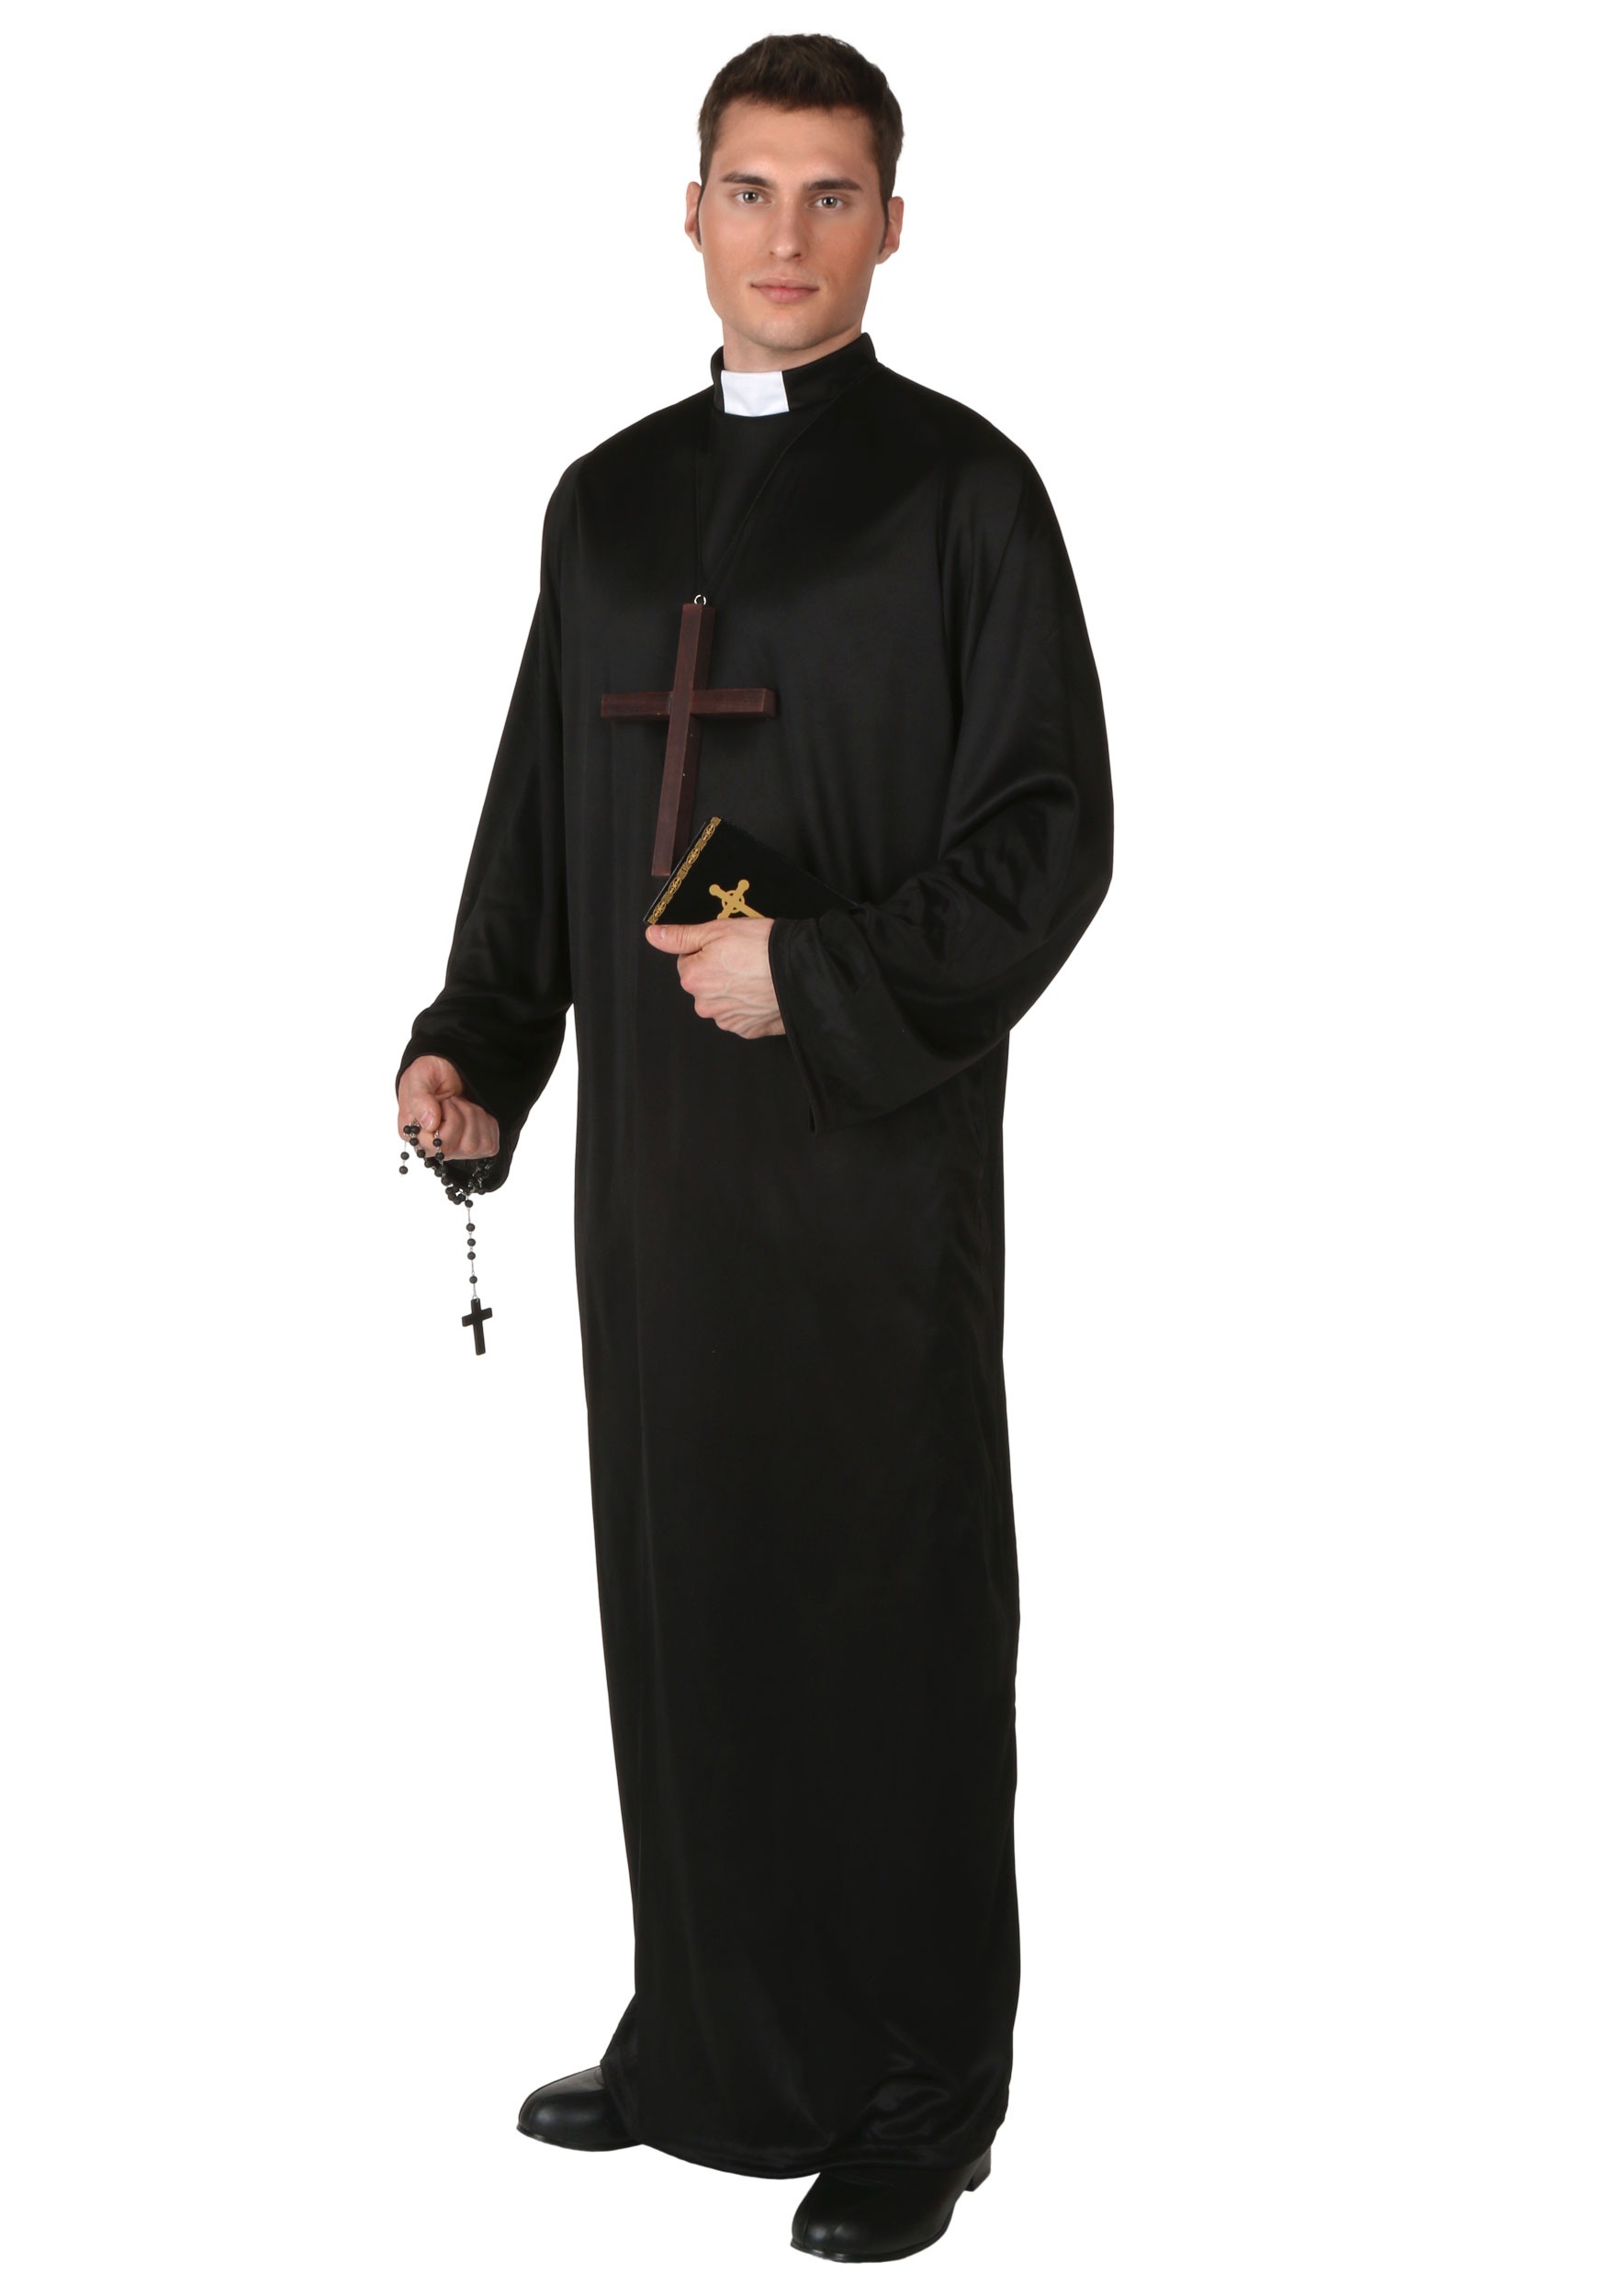 Платье священника. Священник (Priest, Великобритания, 1994). Сутана католического священника. Пастер католический священник. Мантия священника Католика.